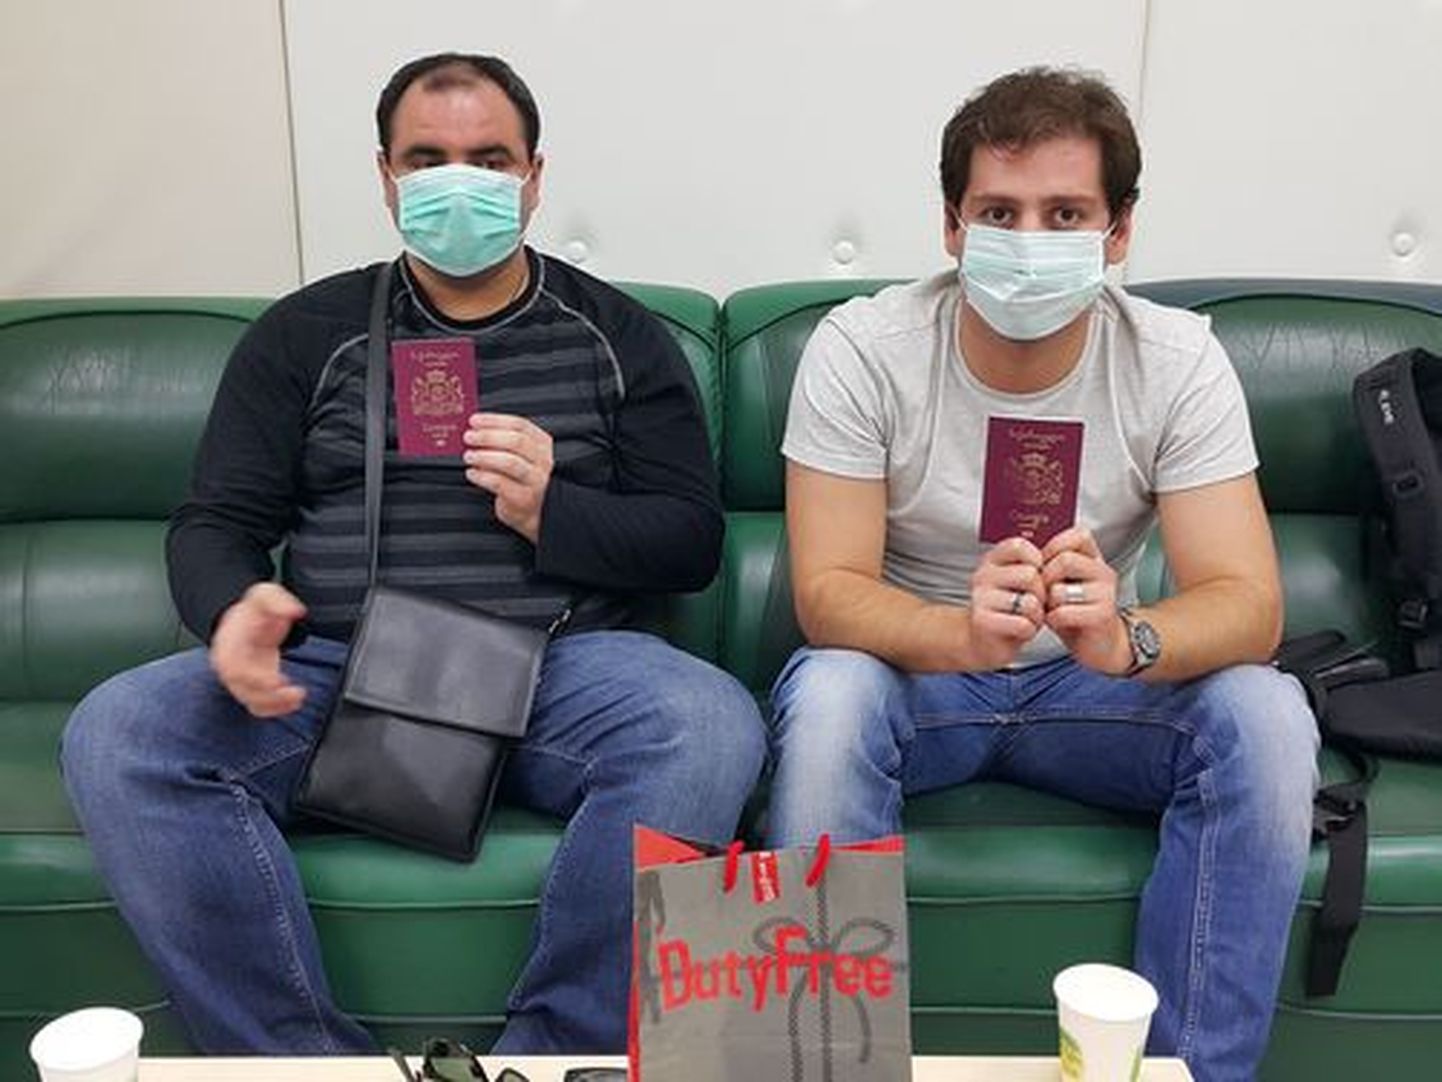 Работники иммиграционной службы решили обыскать багаж пассажиров, представившихся гражданами Эстонии. В ходе обысков были обнаружены их настоящие – грузинские – паспорта.